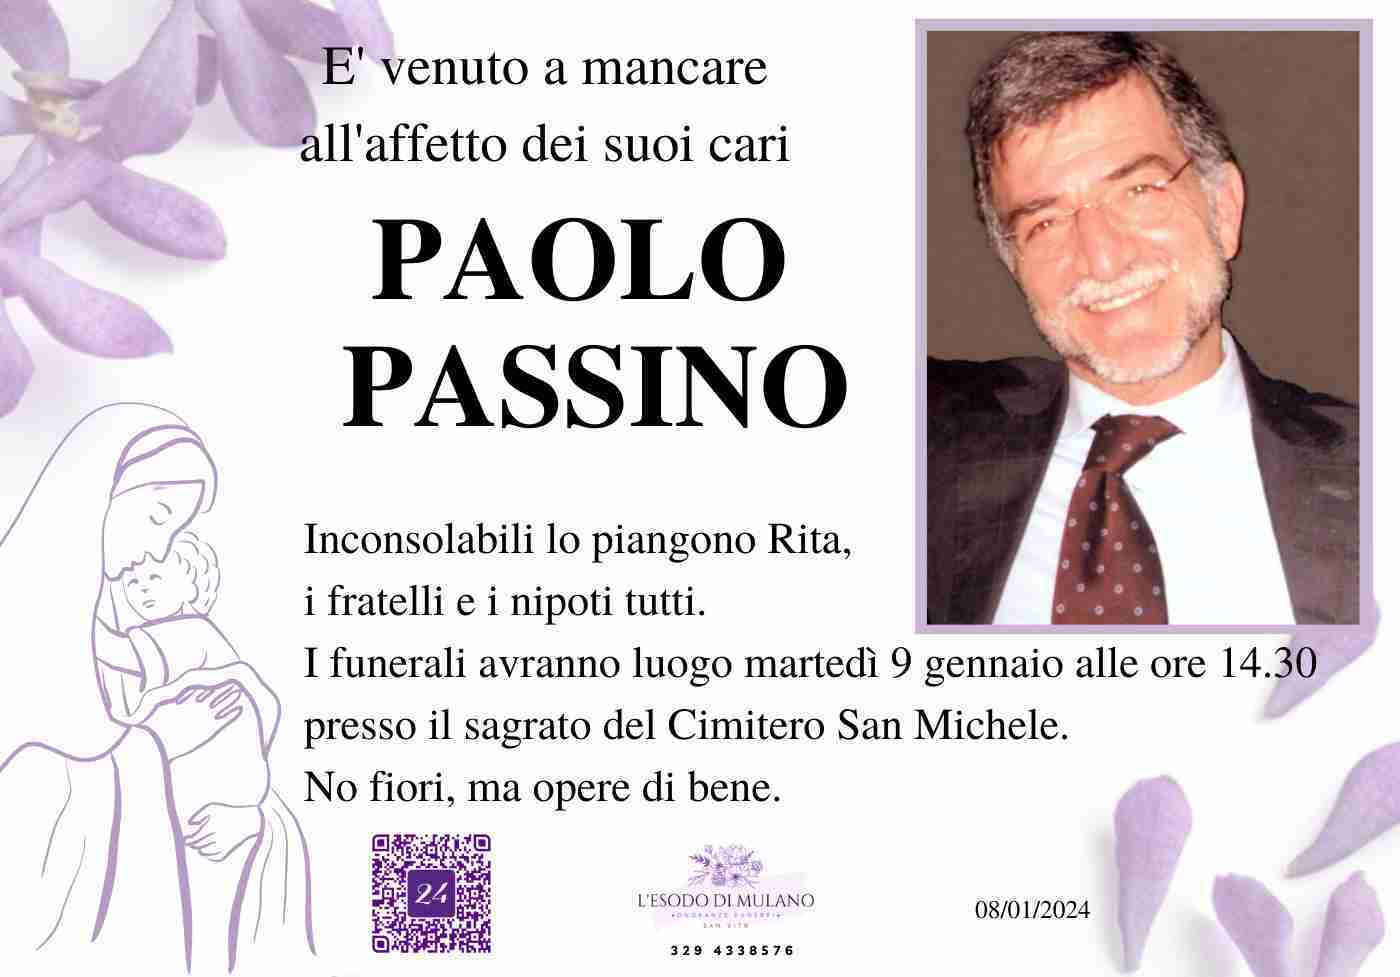 Paolo Passino